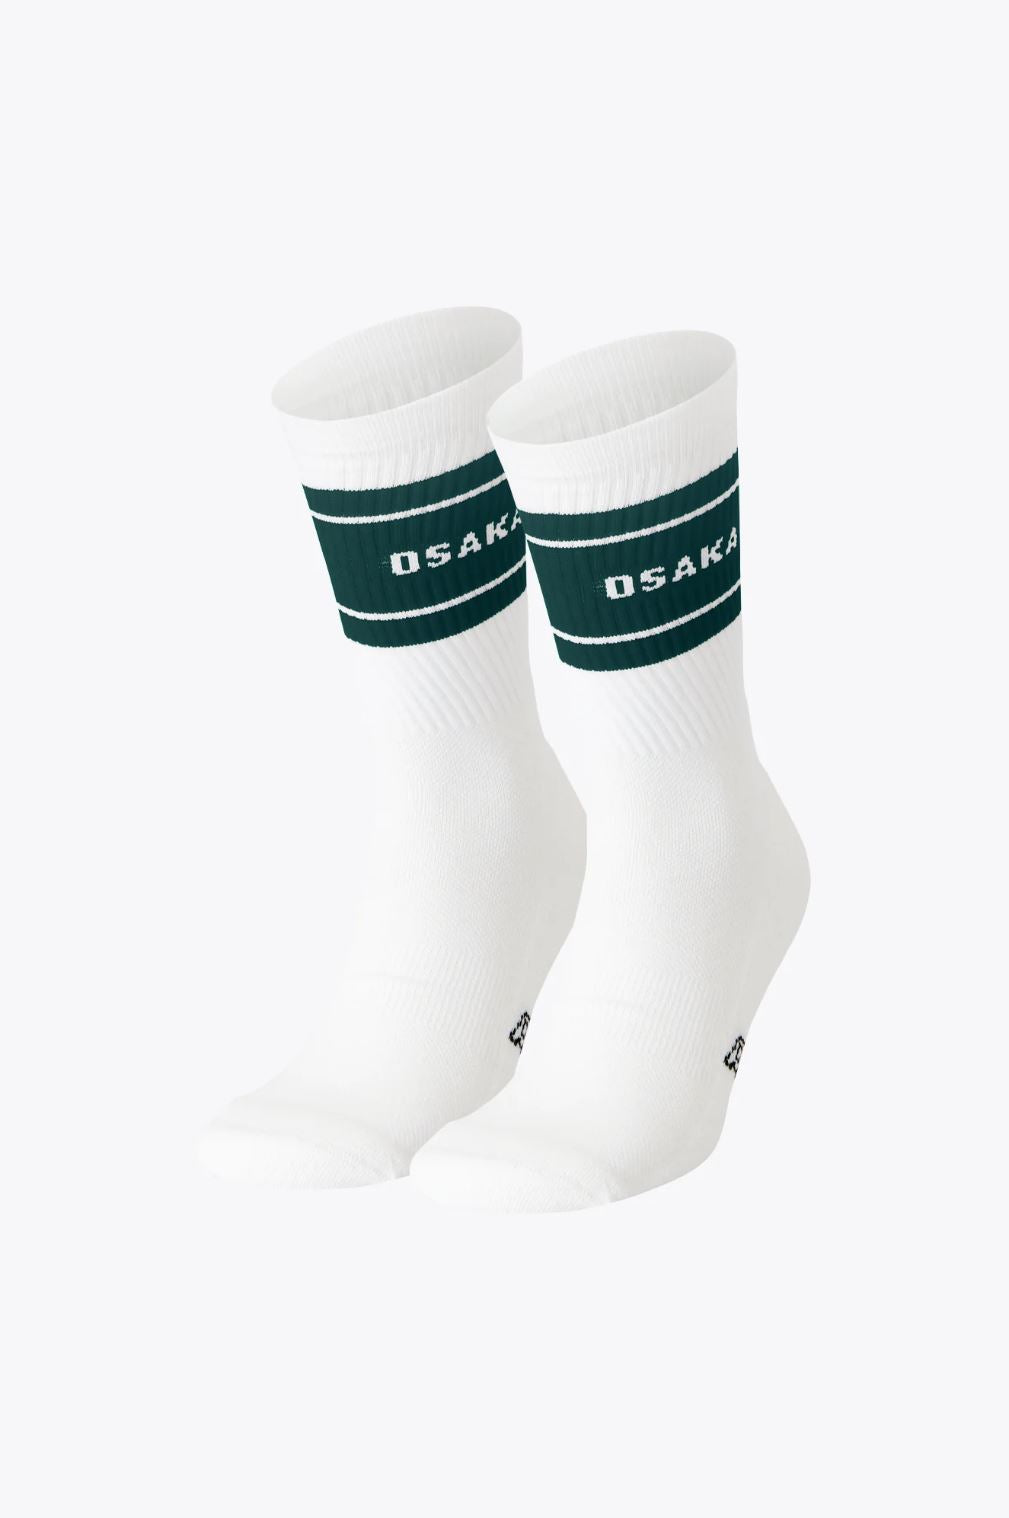 Osaka Socks 2-pack (White/Pine Green)